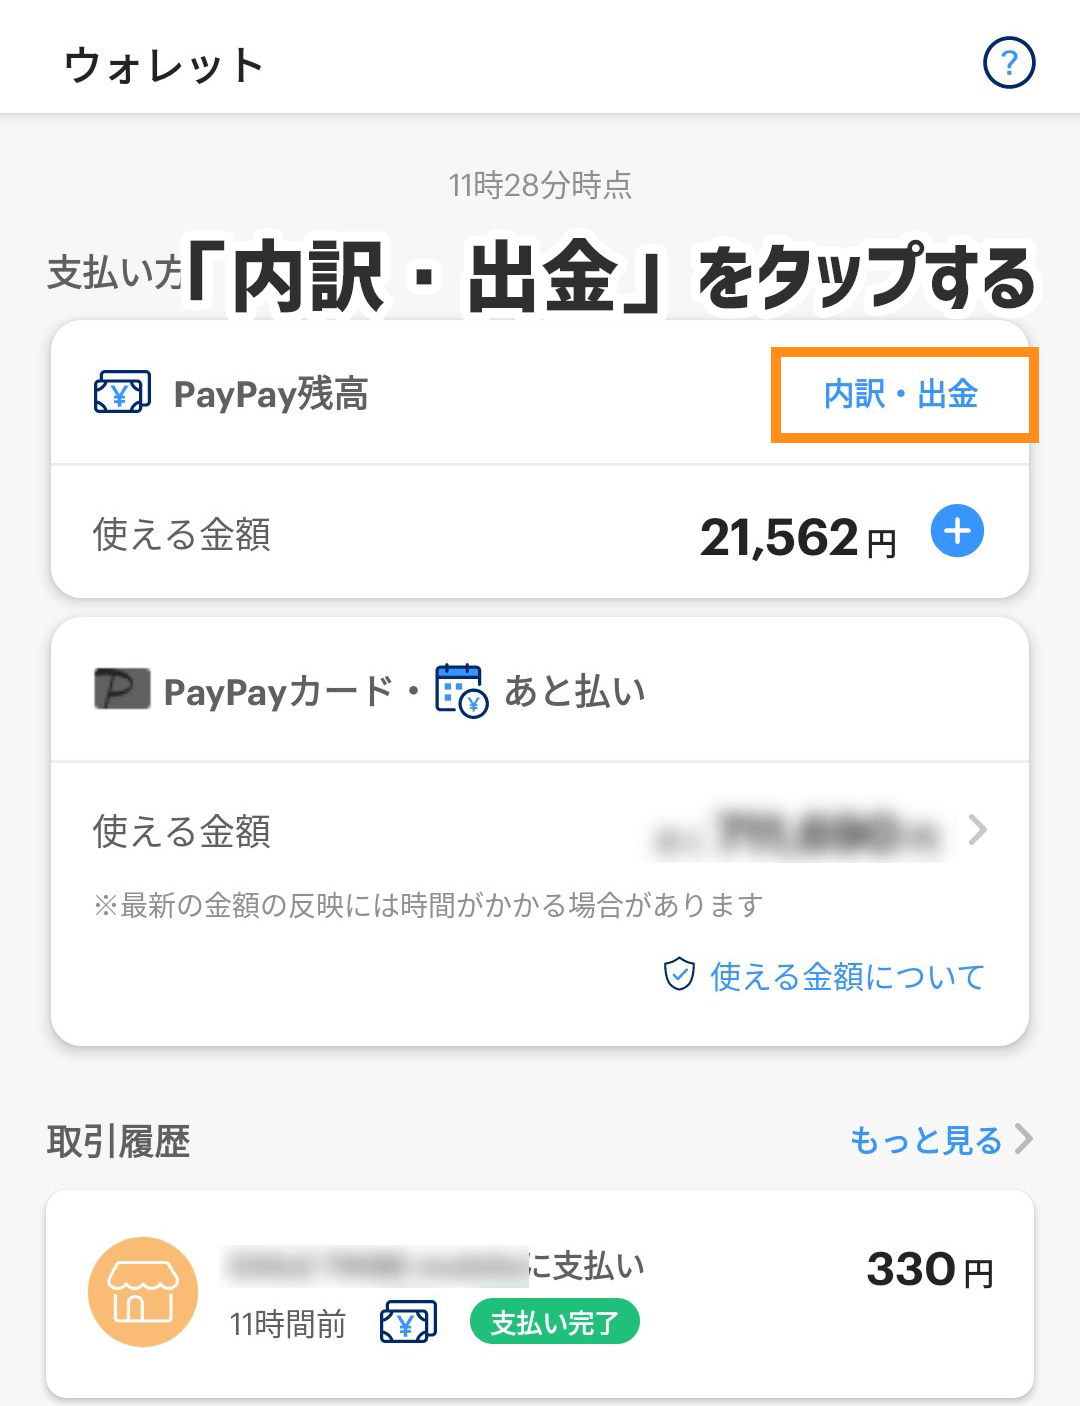 PayPay出金②内訳・出金をタップ